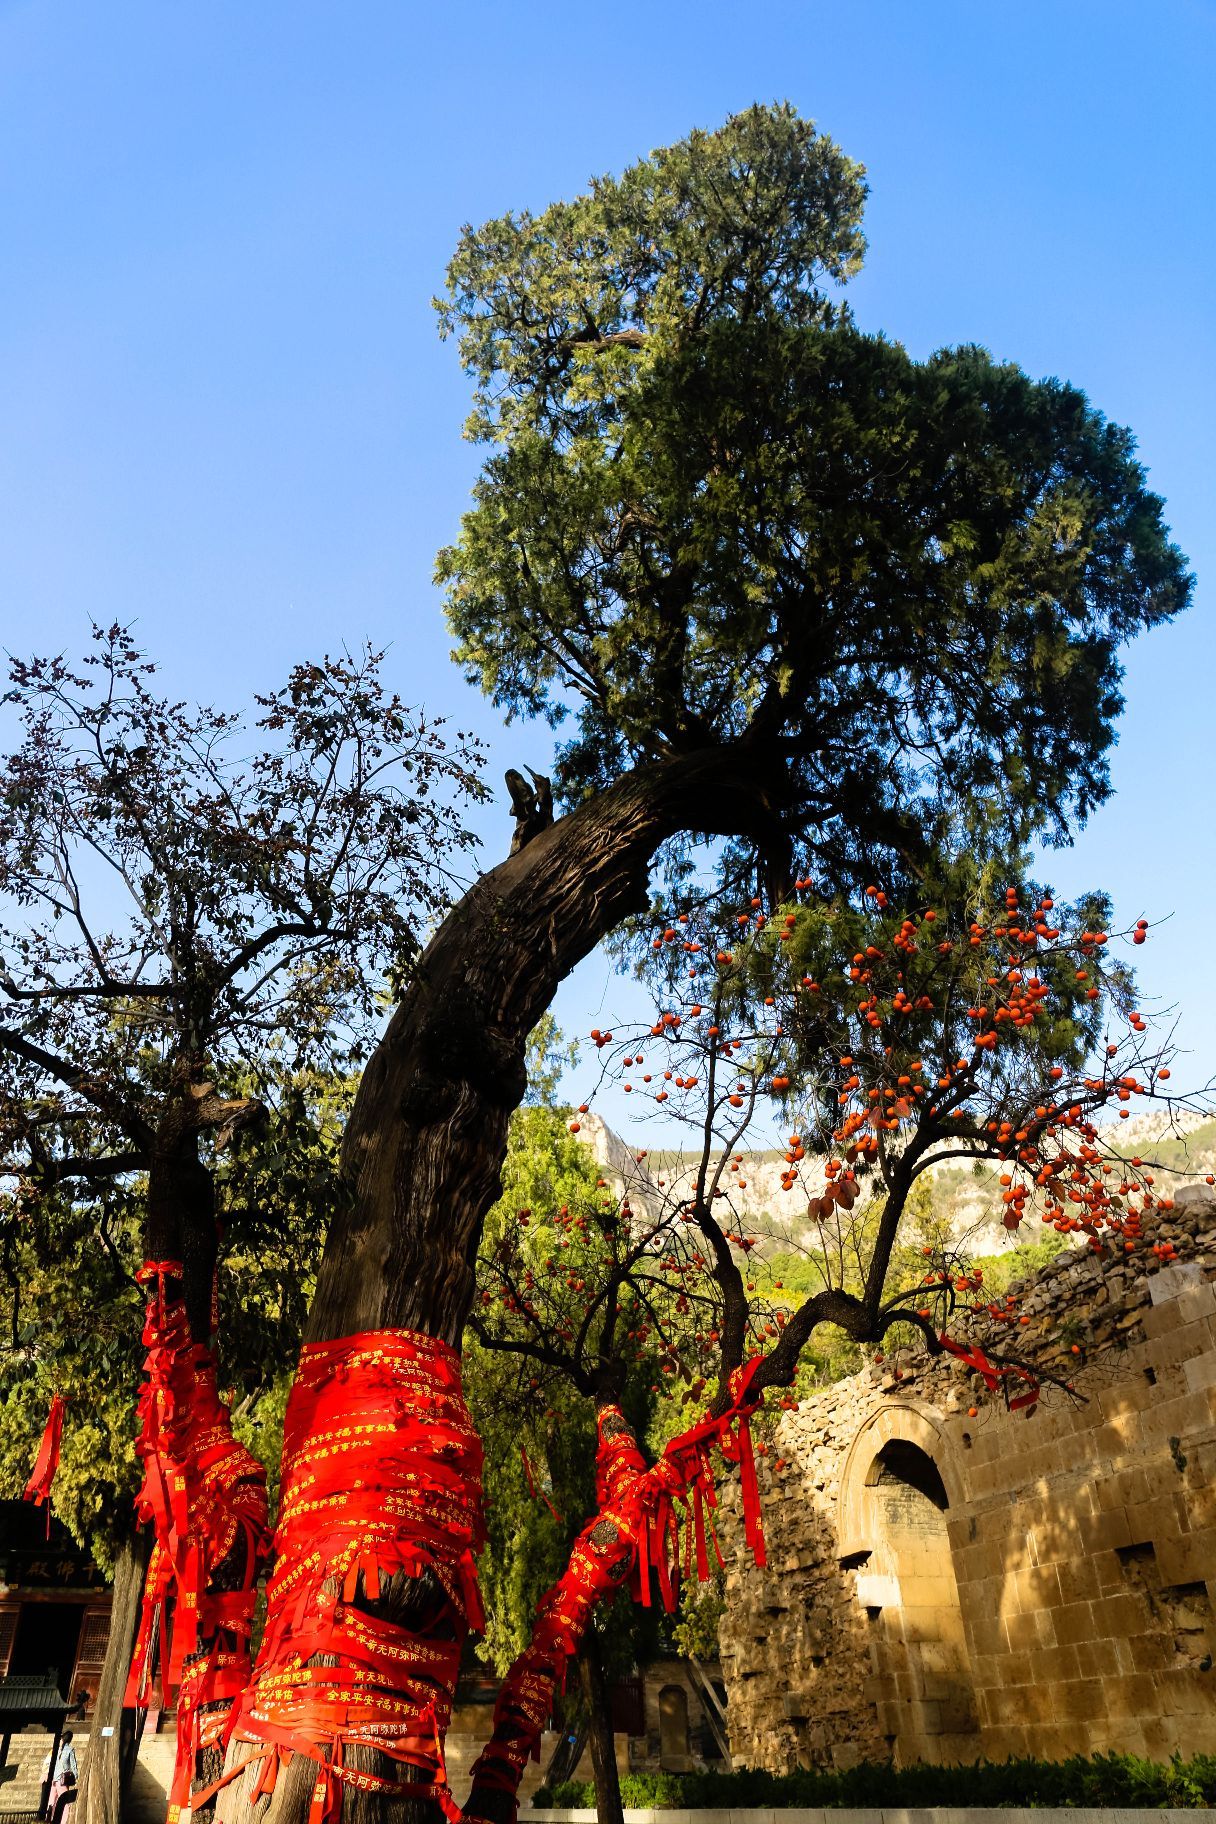 济南灵岩寺风景区，在千佛殿前方，有一棵树干粗大弯曲，枝头东指的侧柏，其部分枝干苍枯，但生长枝干茂盛，